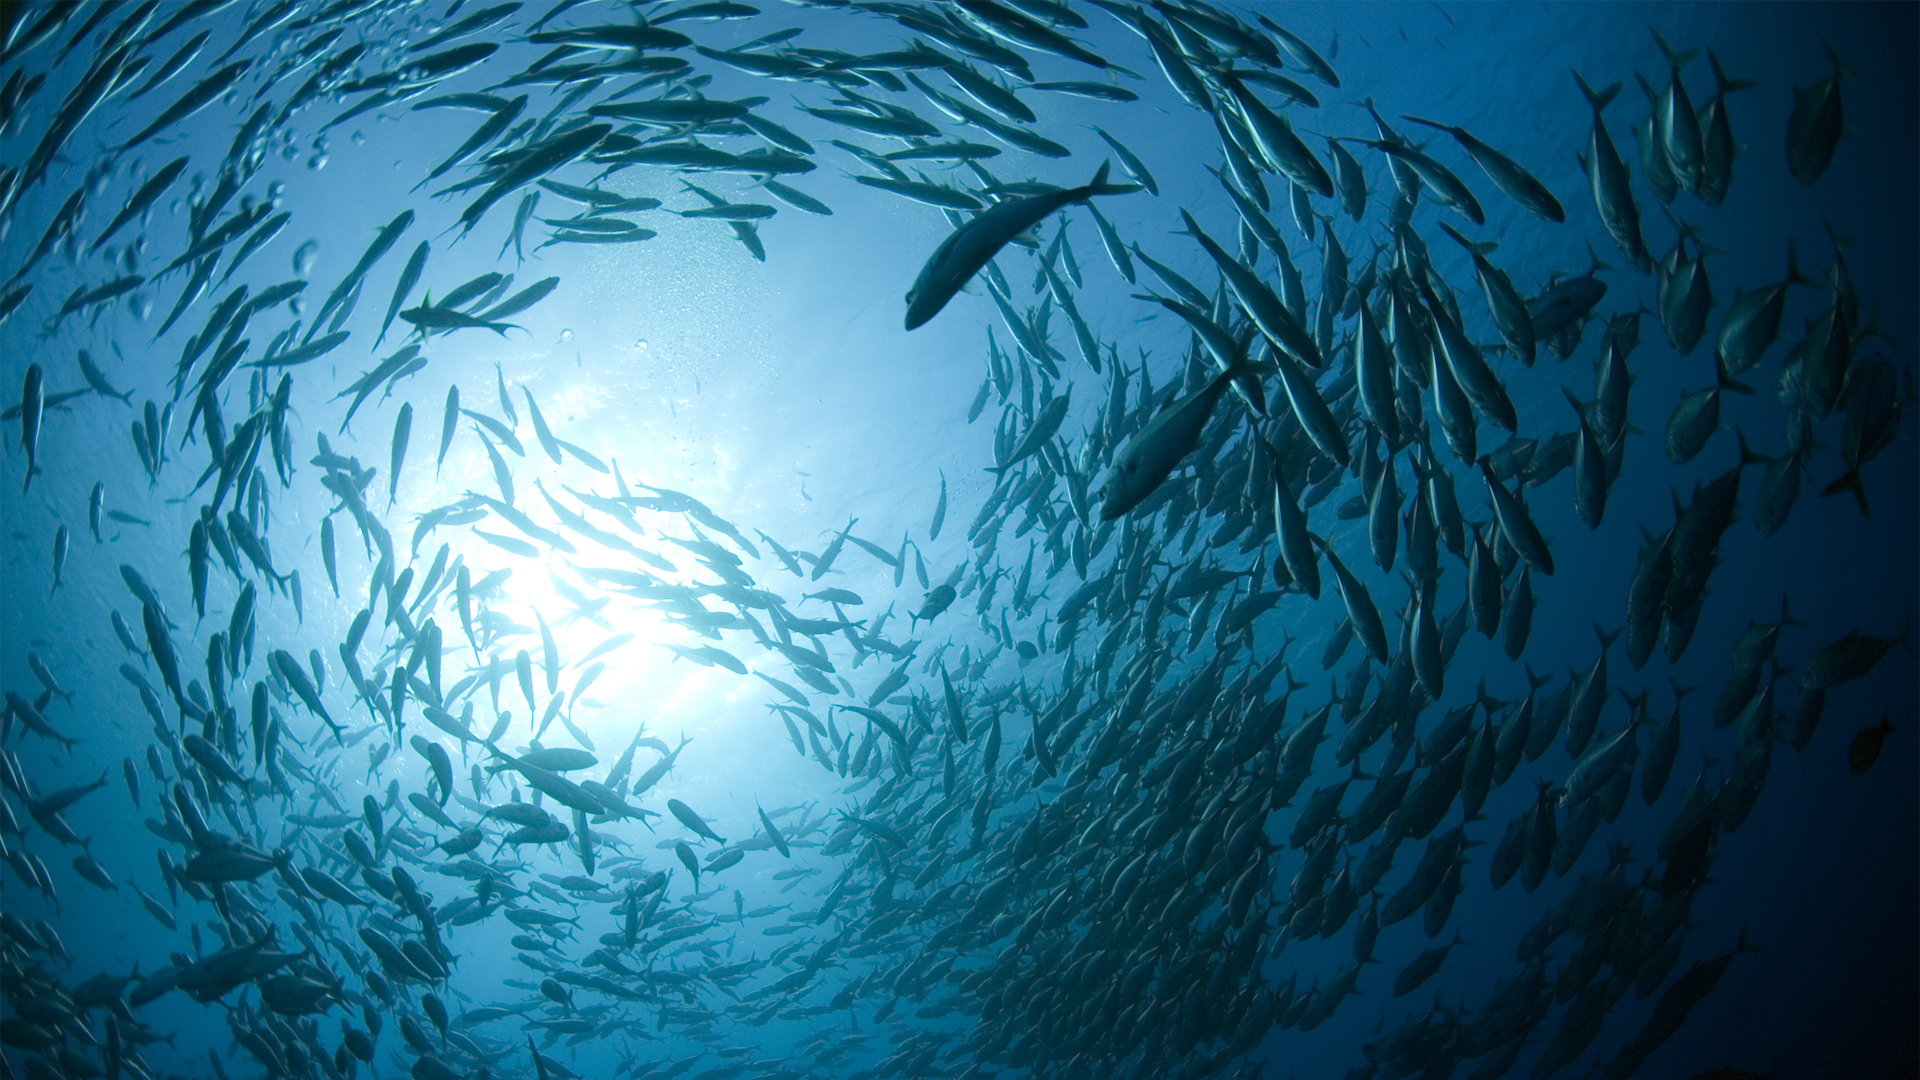 鱼群在海洋中游弋壁纸 动物壁纸 壁纸下载 彼岸桌面